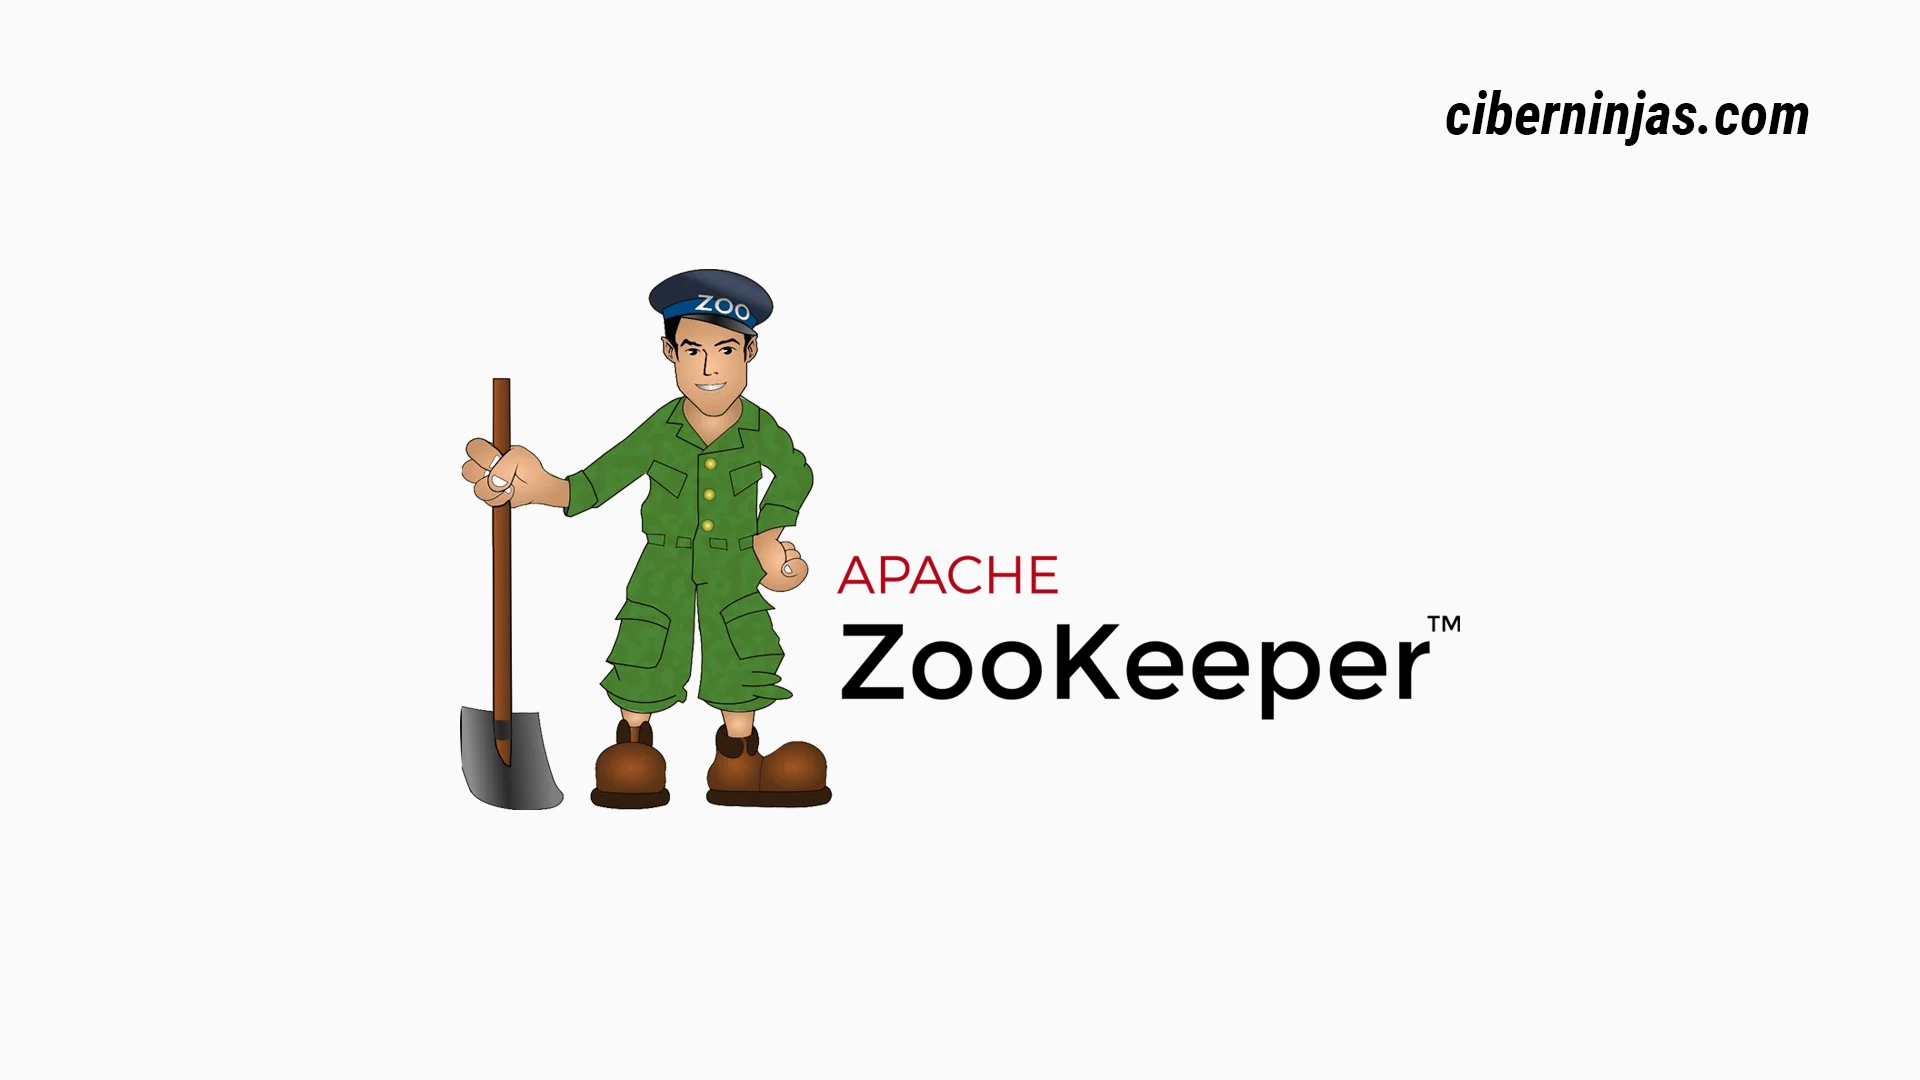 ¿Qué es Zookeeper Apache?, Un proyecto de Software de la Fundación Apache